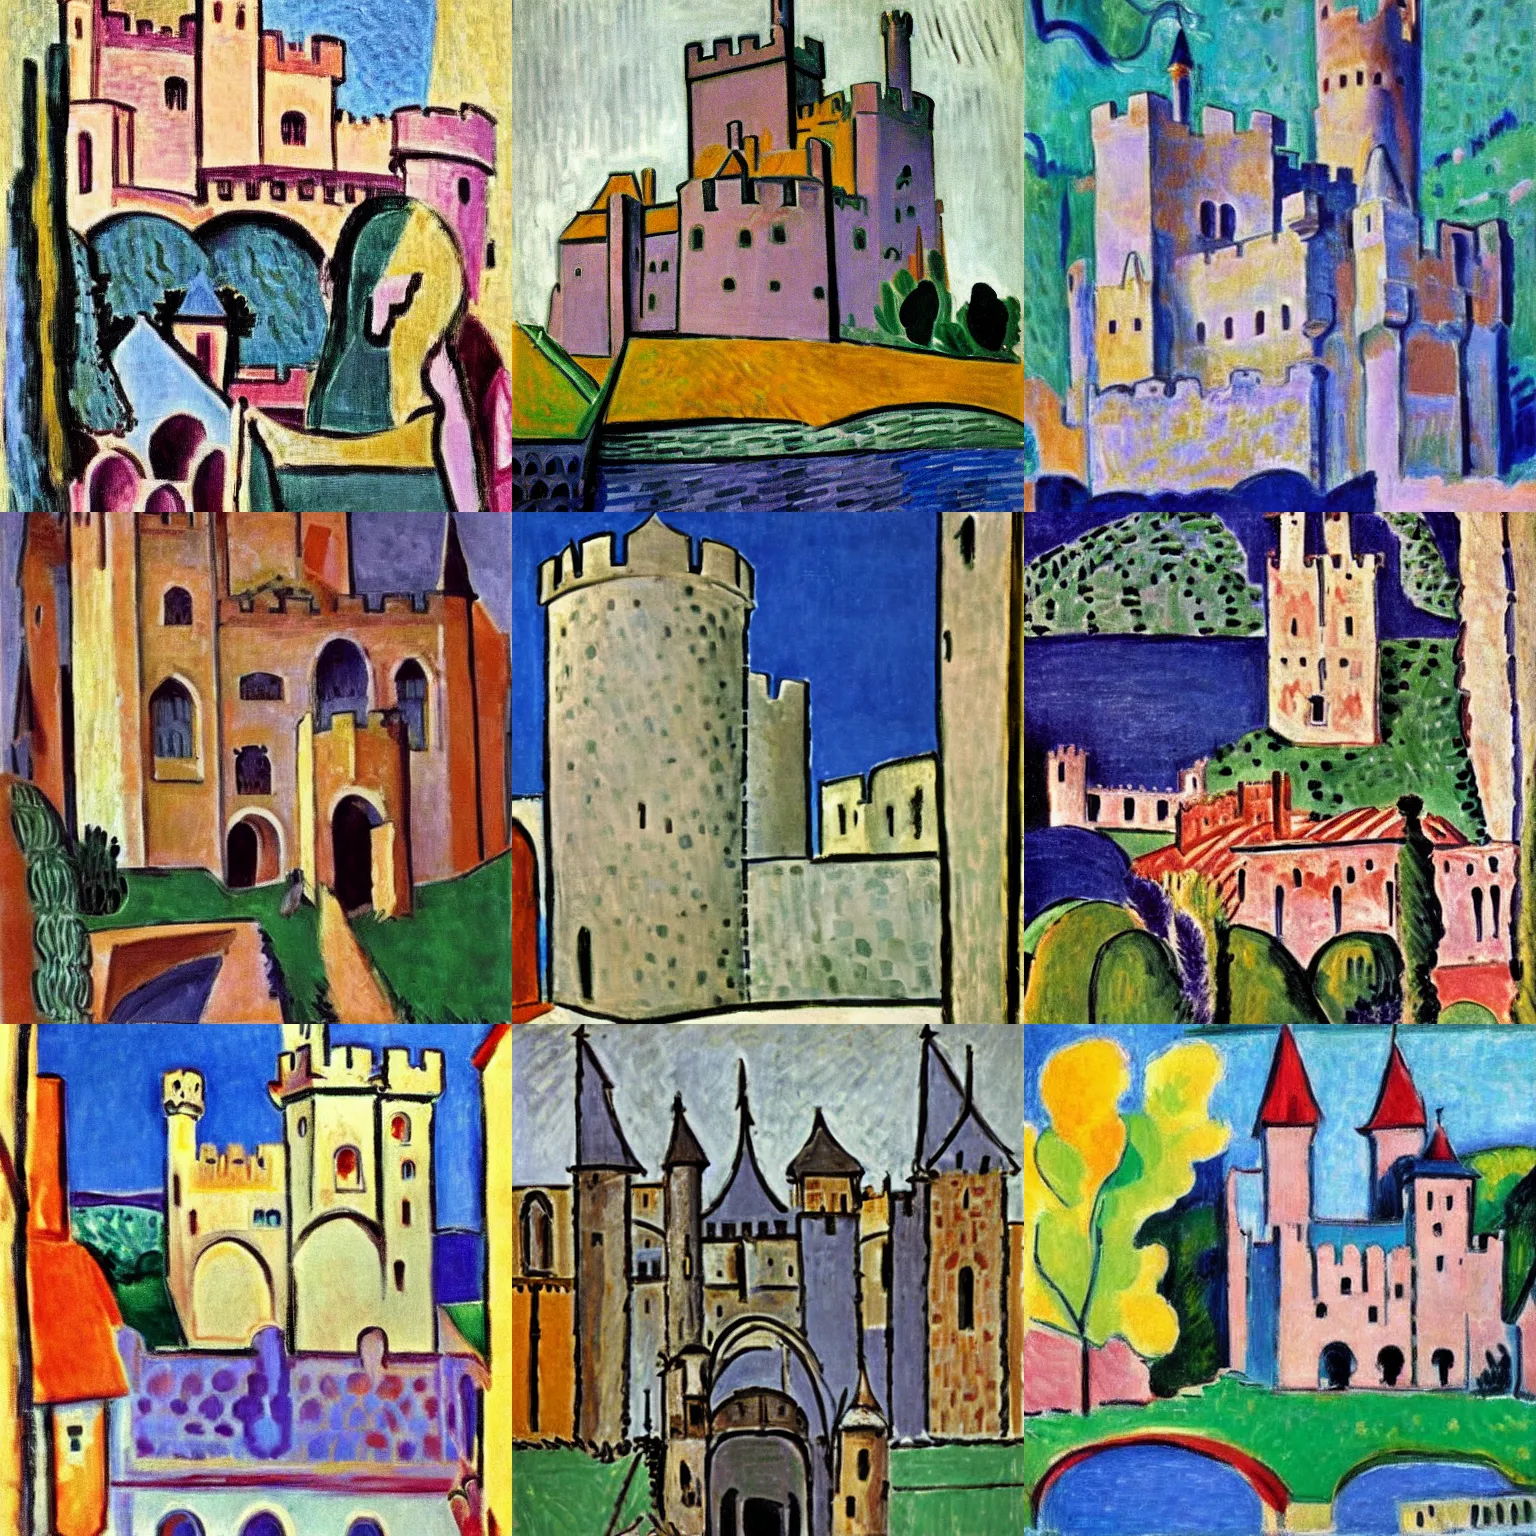 Prompt: medieval castle, by henri matisse